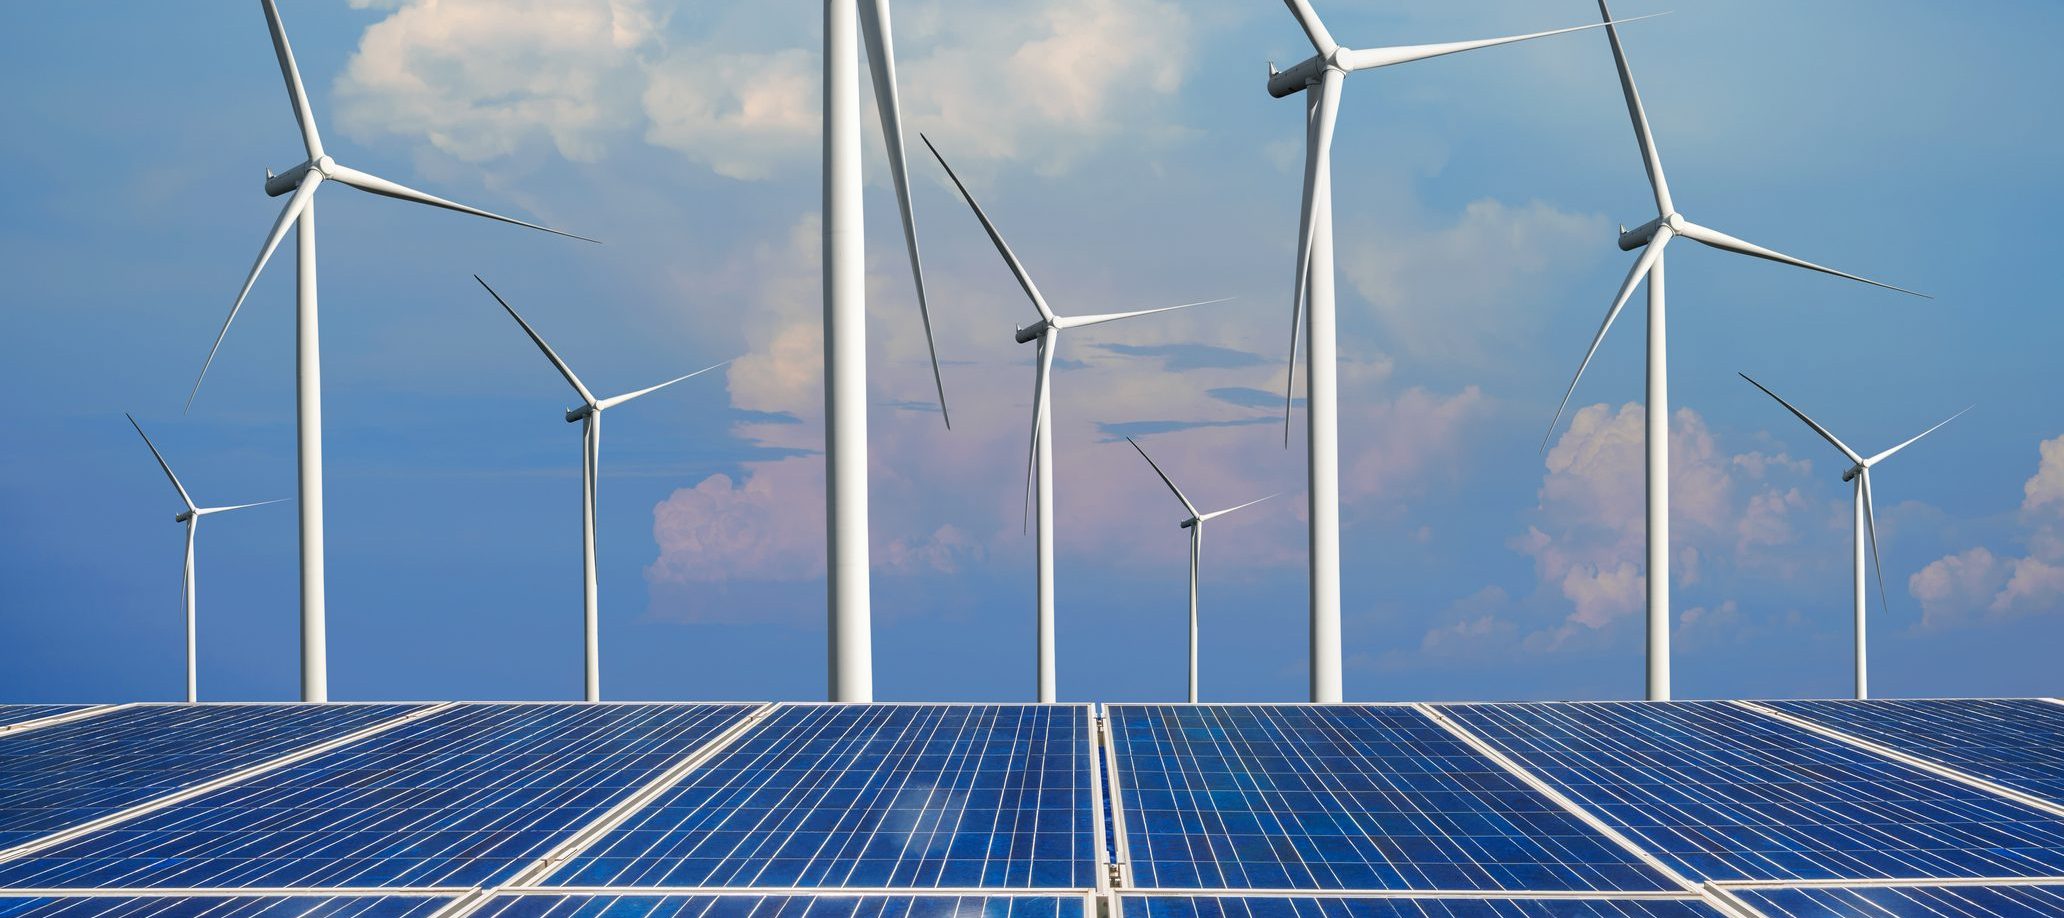 BAE temiz ve yenilenebilir enerjiye 2050’ye kadar 163 milyar dolar yatırım yapacak